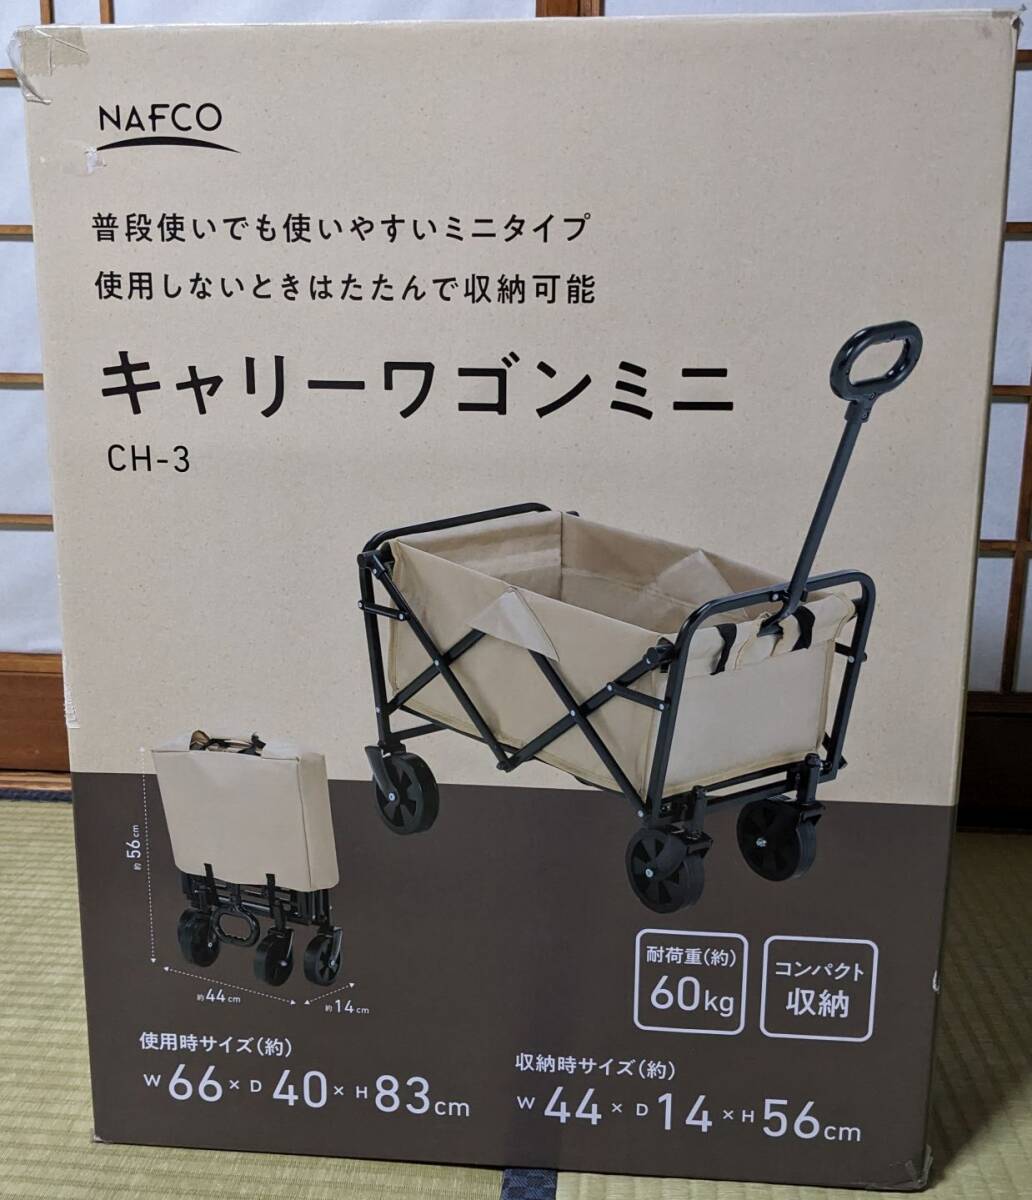 *nafko carry wagon Mini CH-3